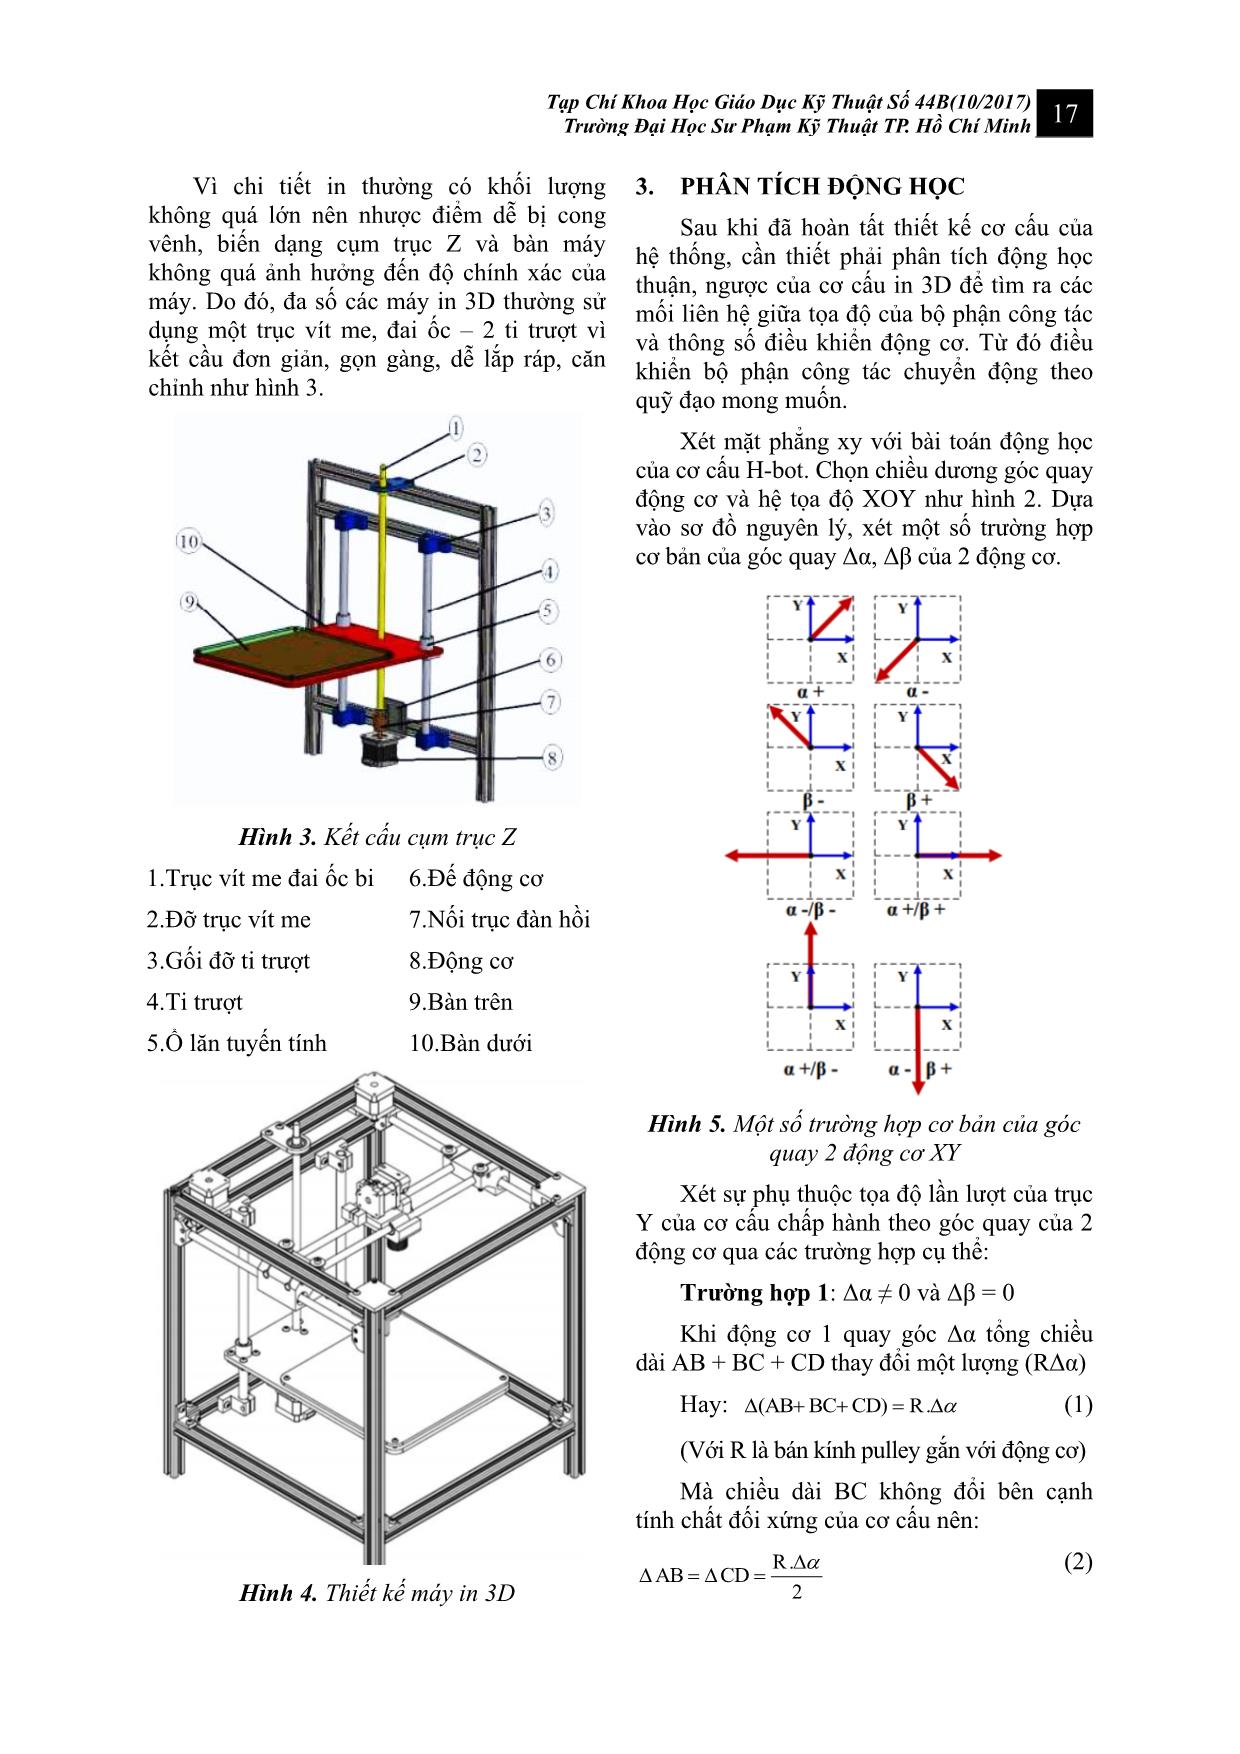 Nghiên cứu ứng dụng cơ cấu H-Bot trong điều khiển máy in 3D reprap theo phương pháp FDM (fused deposition modelling) trang 3